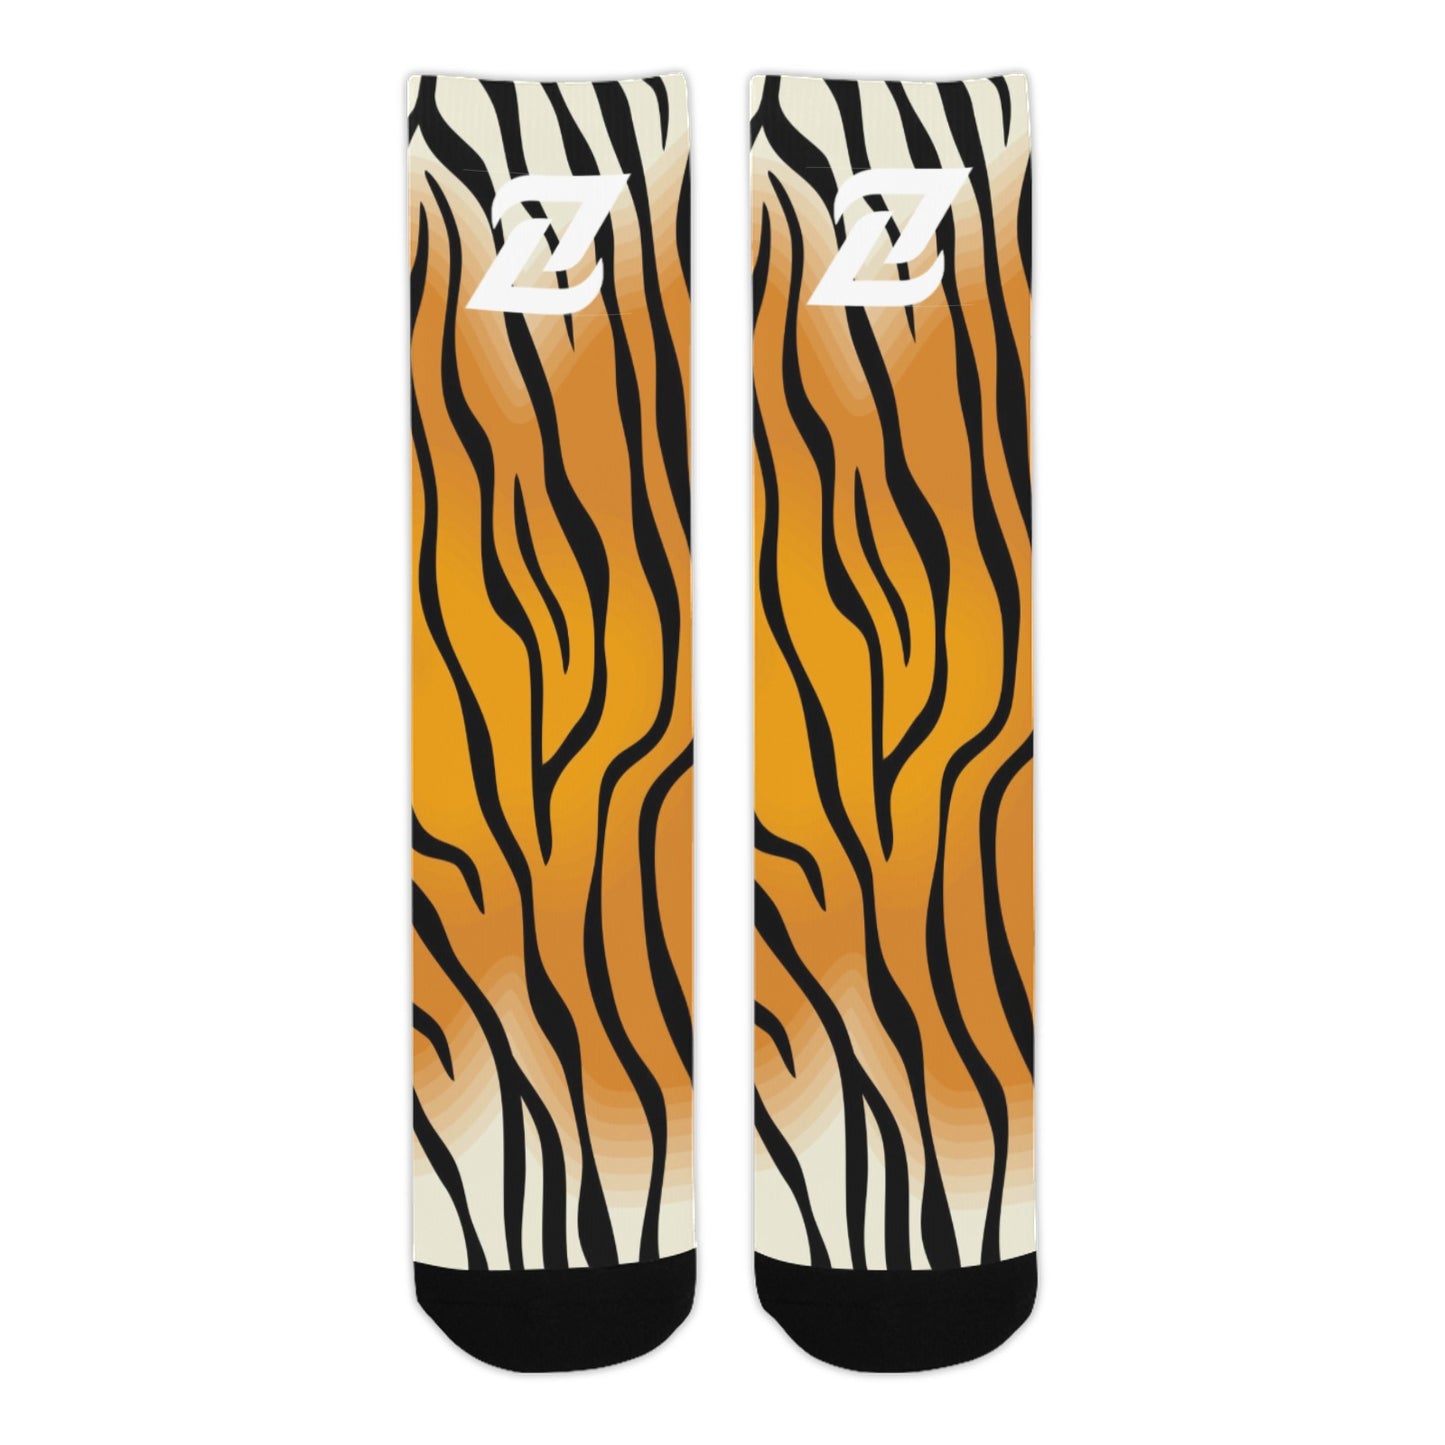 Zen Socks - Tiger Stripes